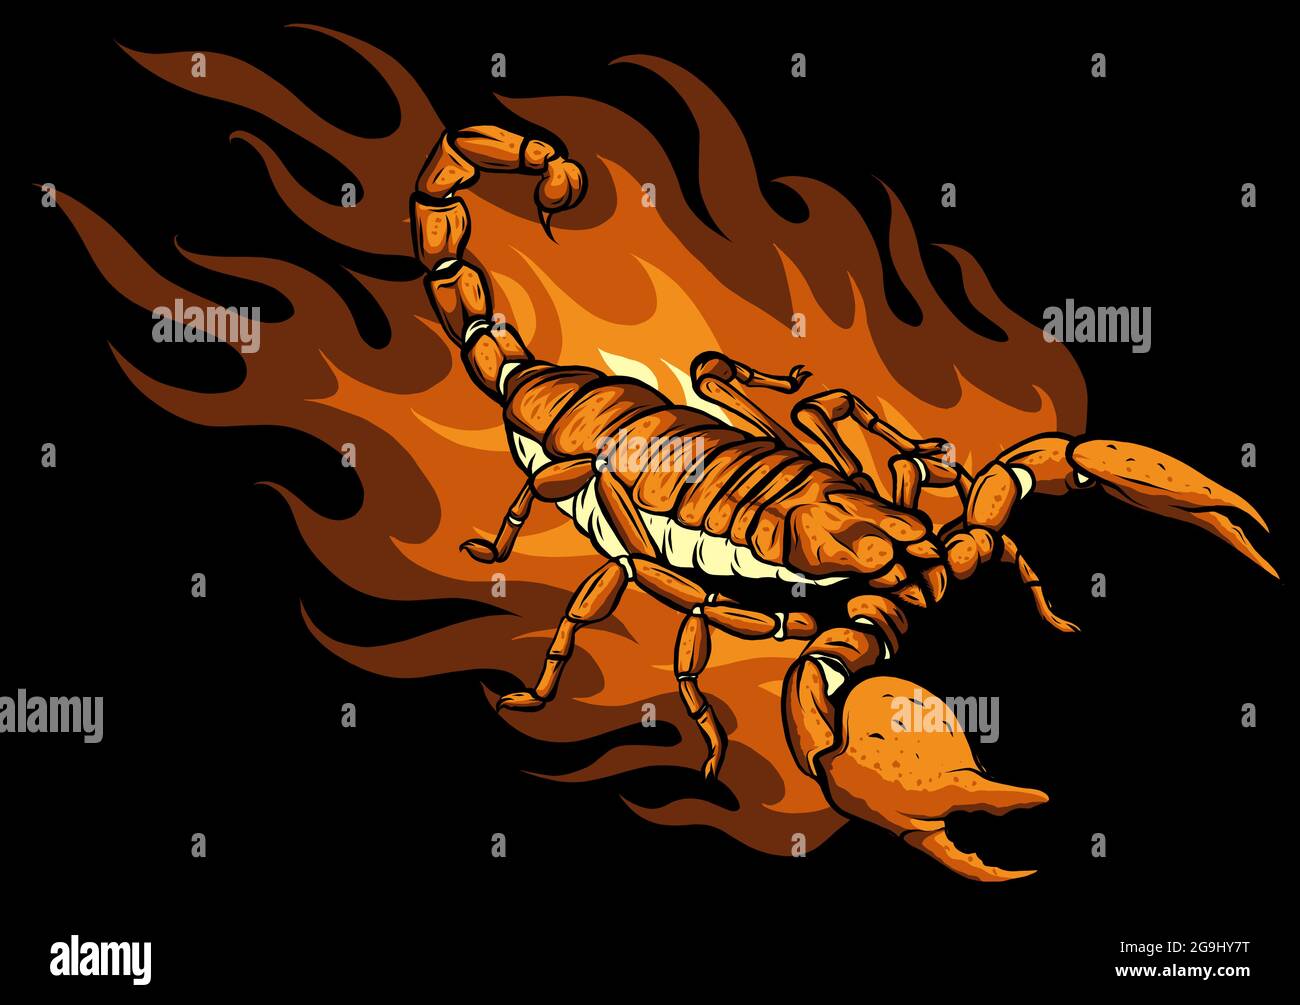 Cartoon scorpion